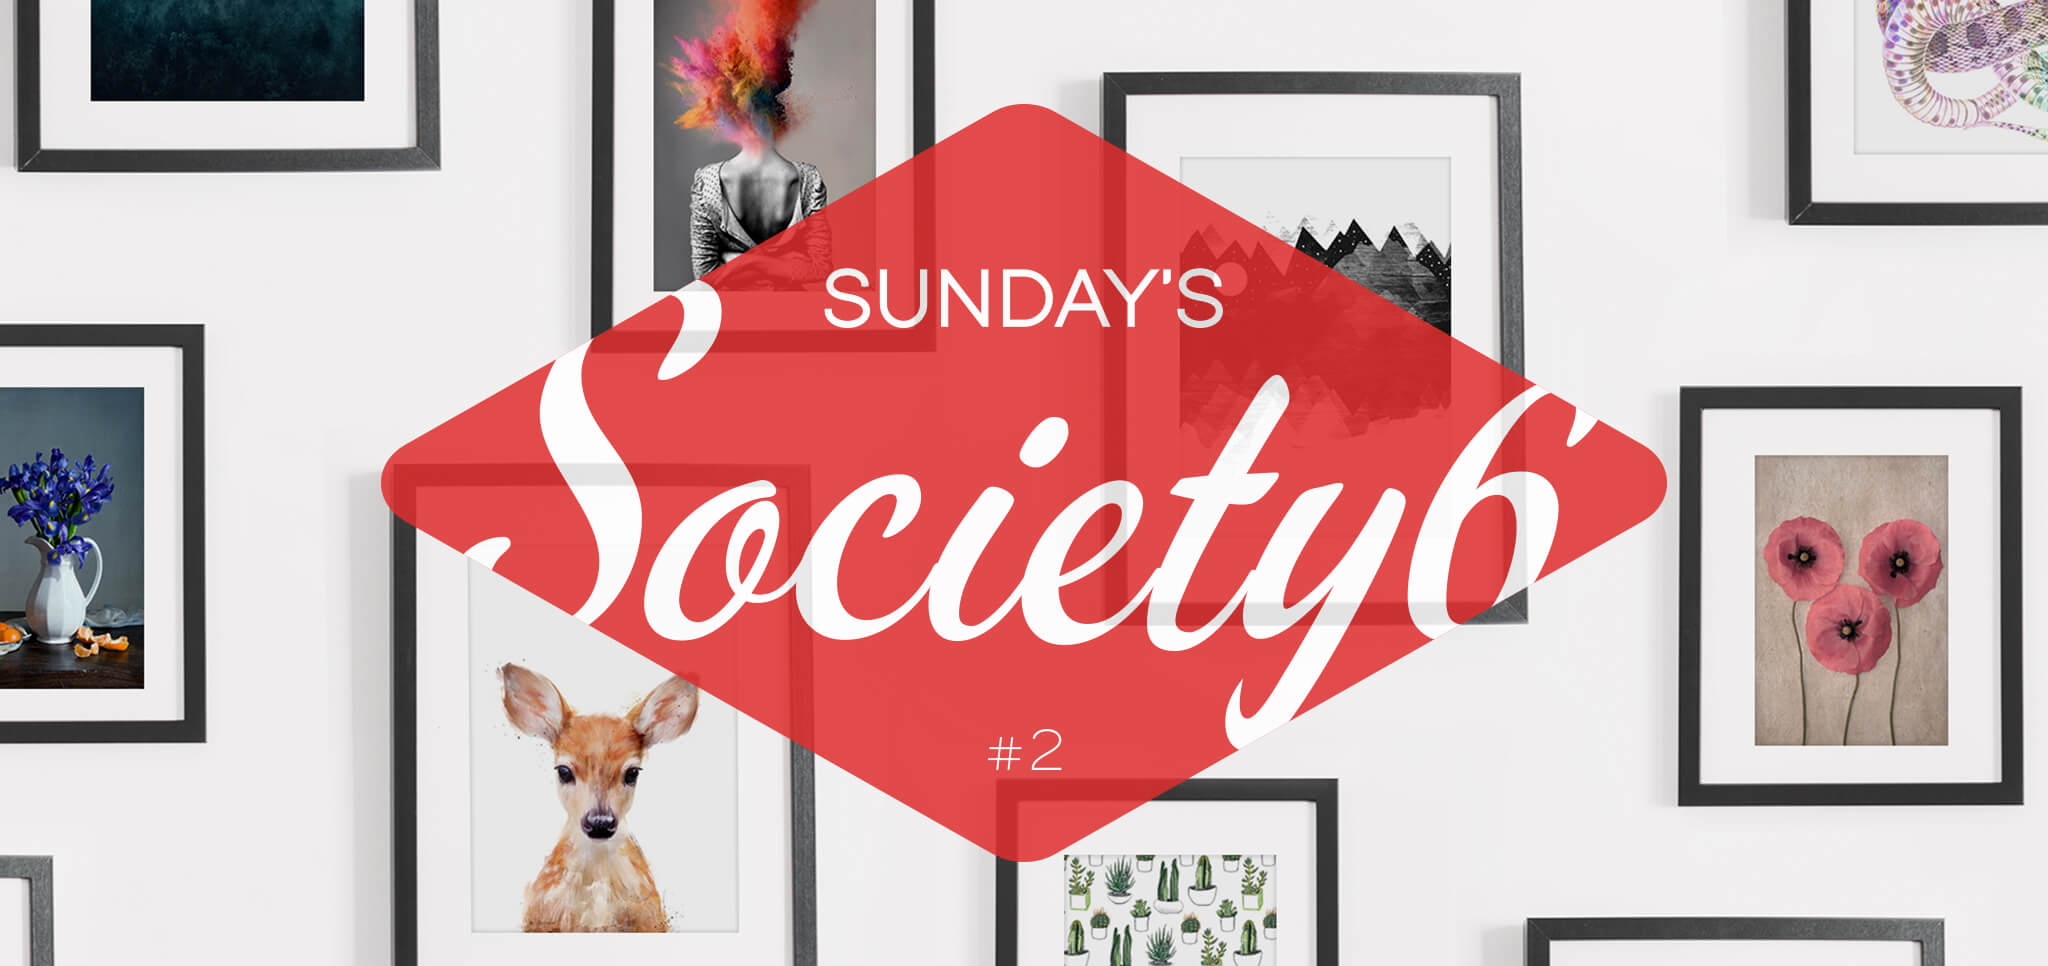 Sunday’s Society6 – #2